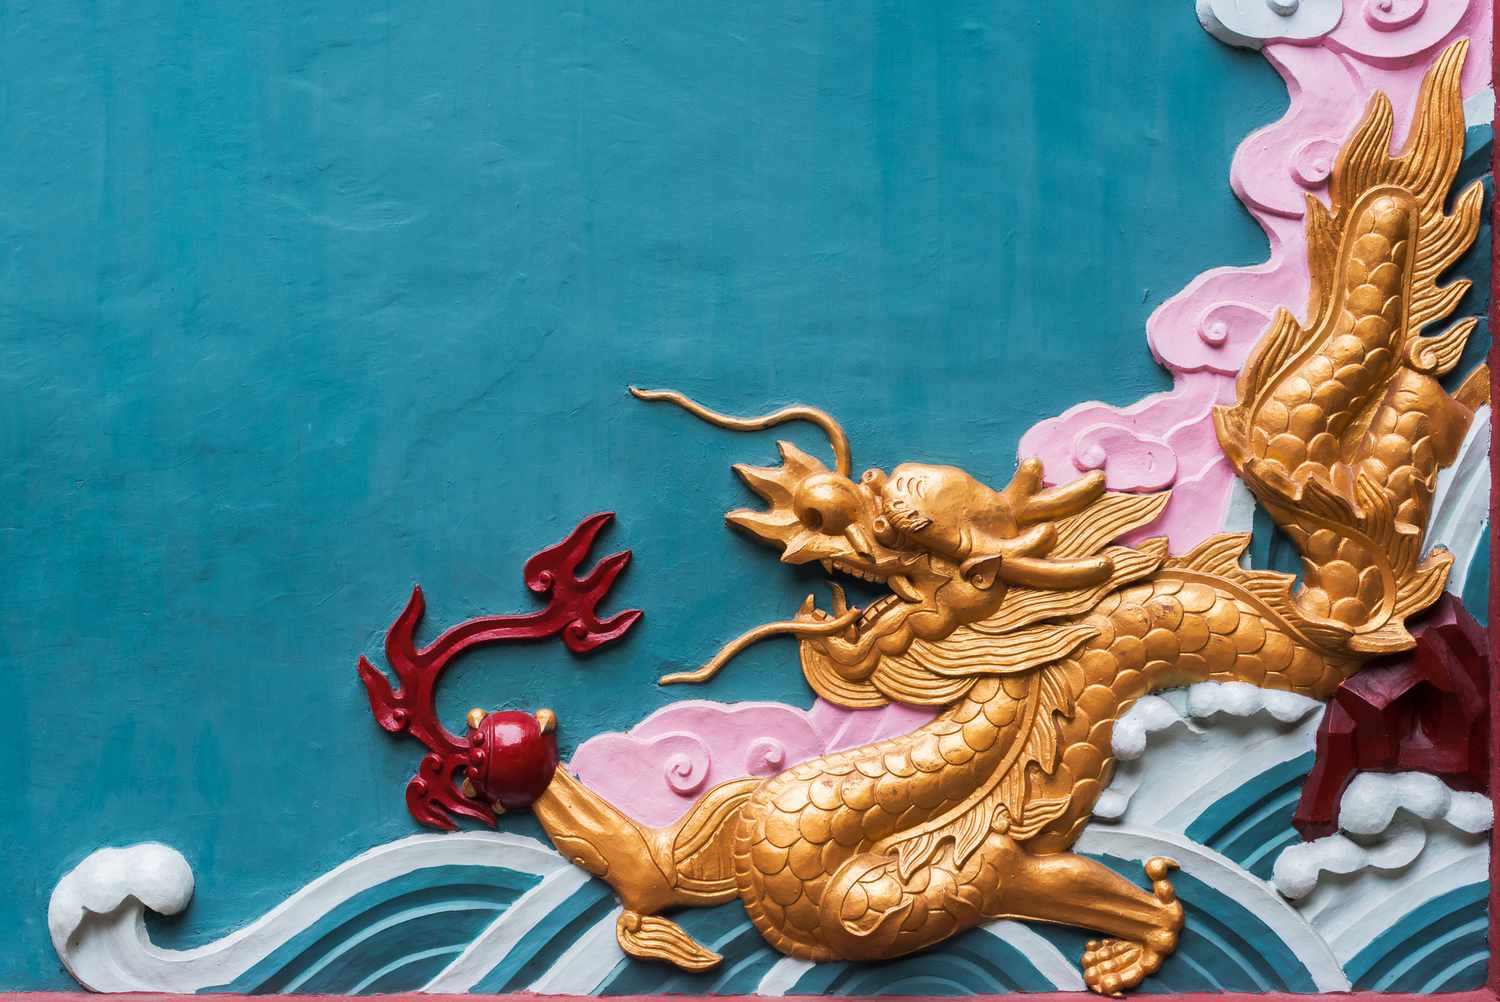 Fresque de dragon coloré dans un temple bouddhiste, Chengdu, province du Sichuan, Chine